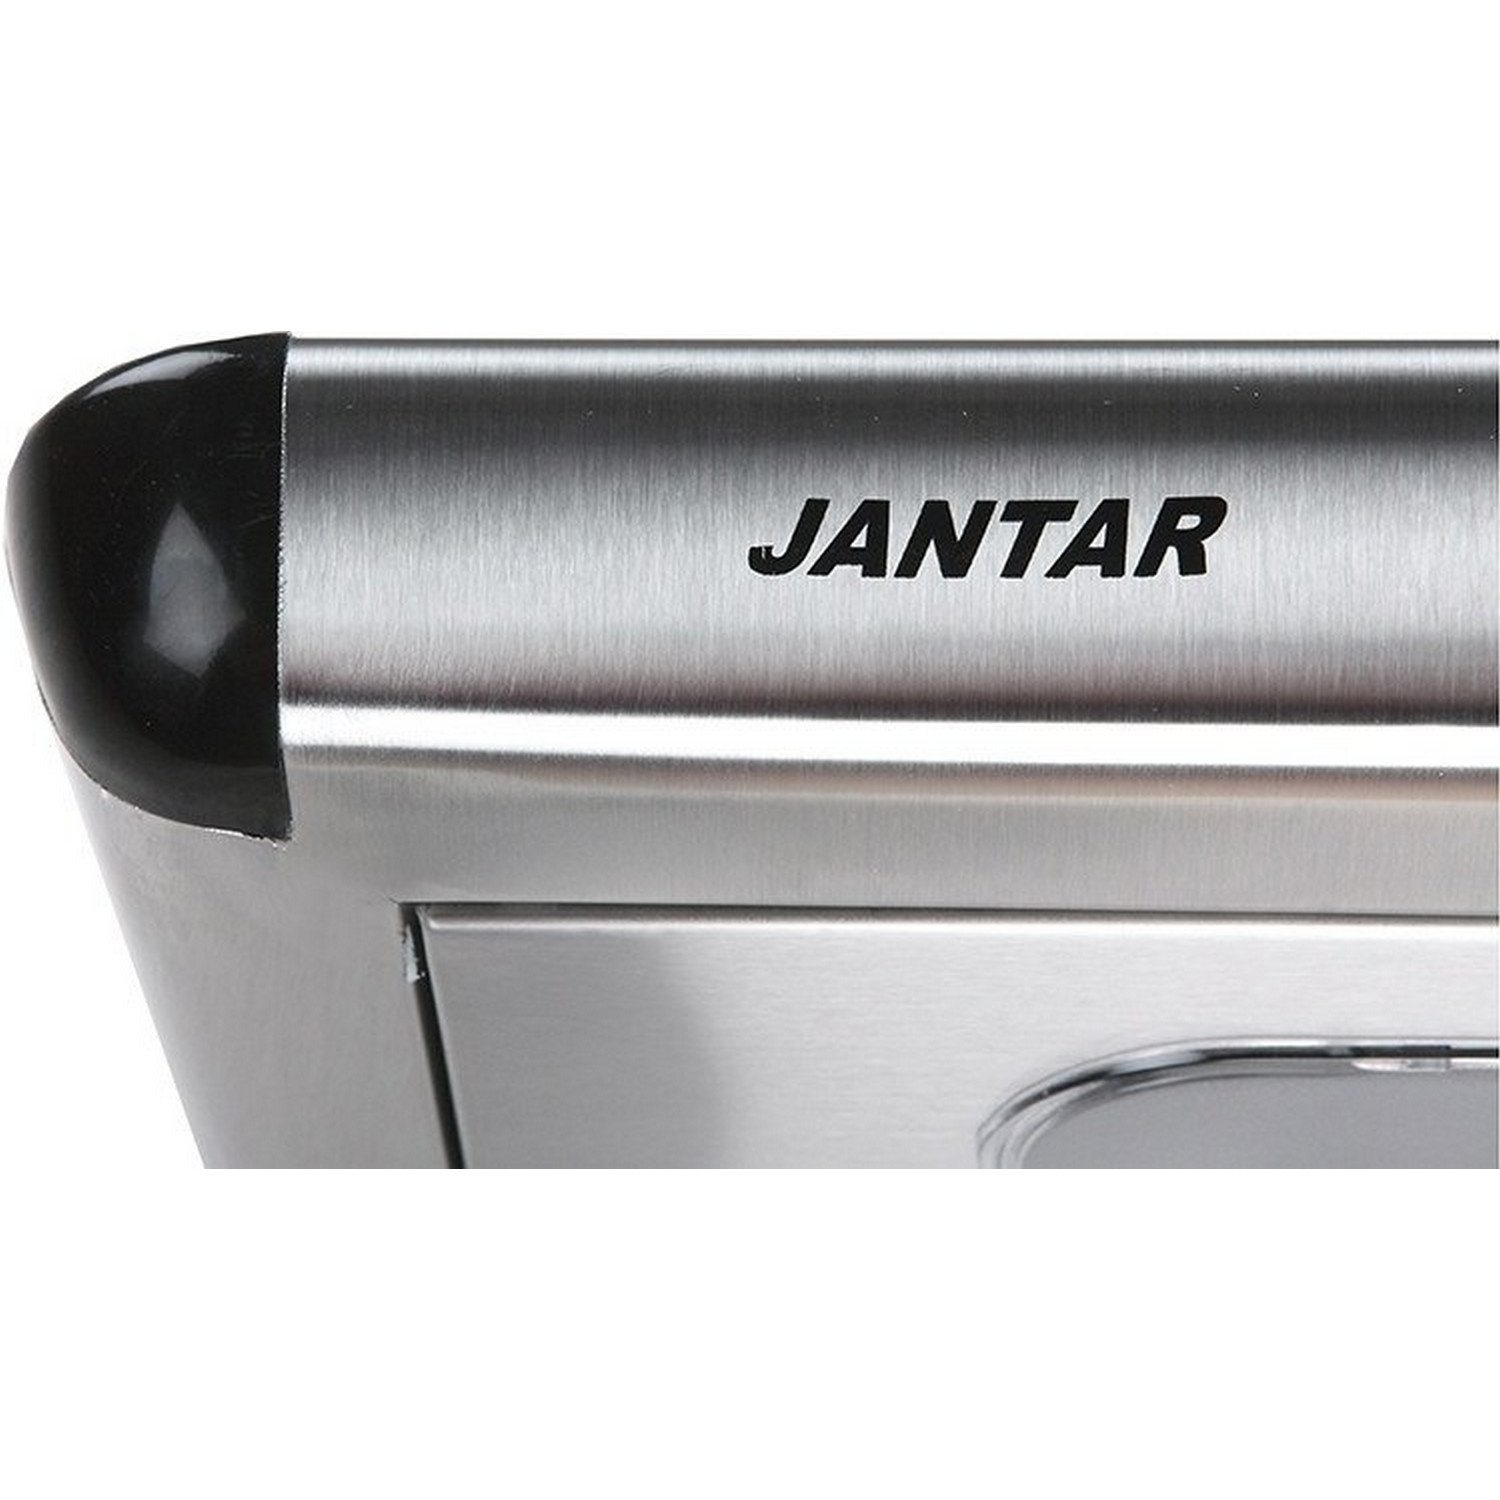 Кухонна витяжка Jantar Passat 50 IS відгуки - зображення 5